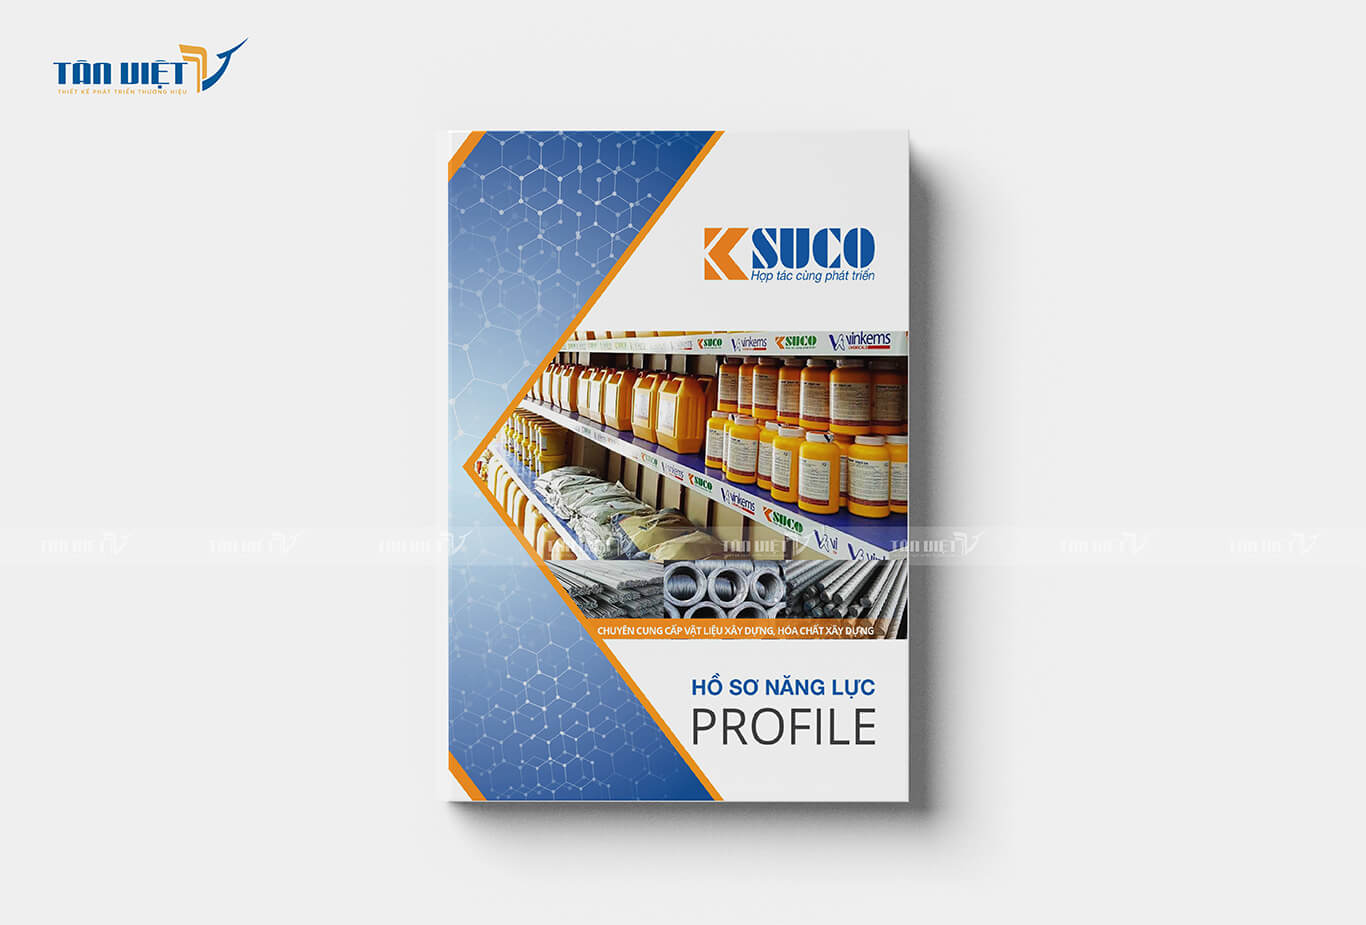 Hồ sơ năng lực công ty hóa chất xây dựng KSUCO